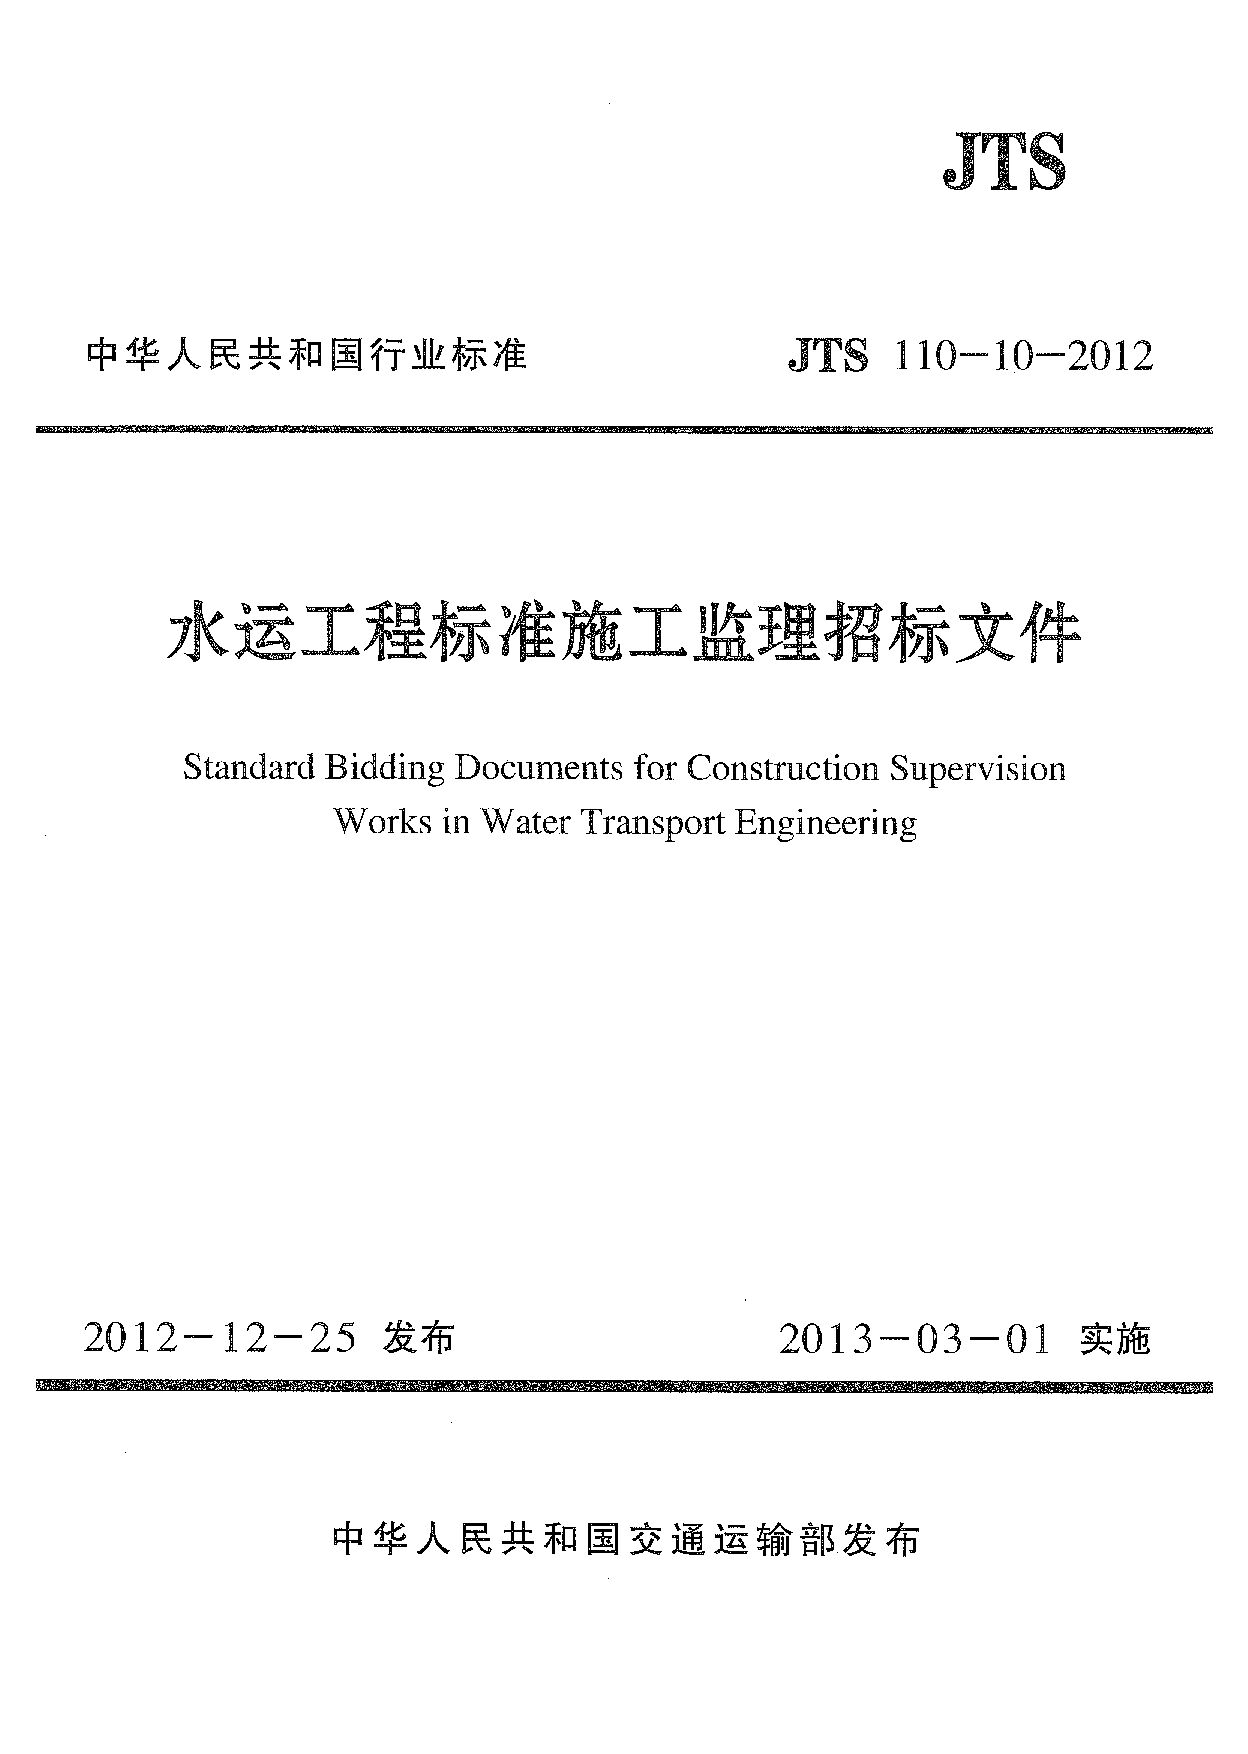 JTS 110-10-2012封面图